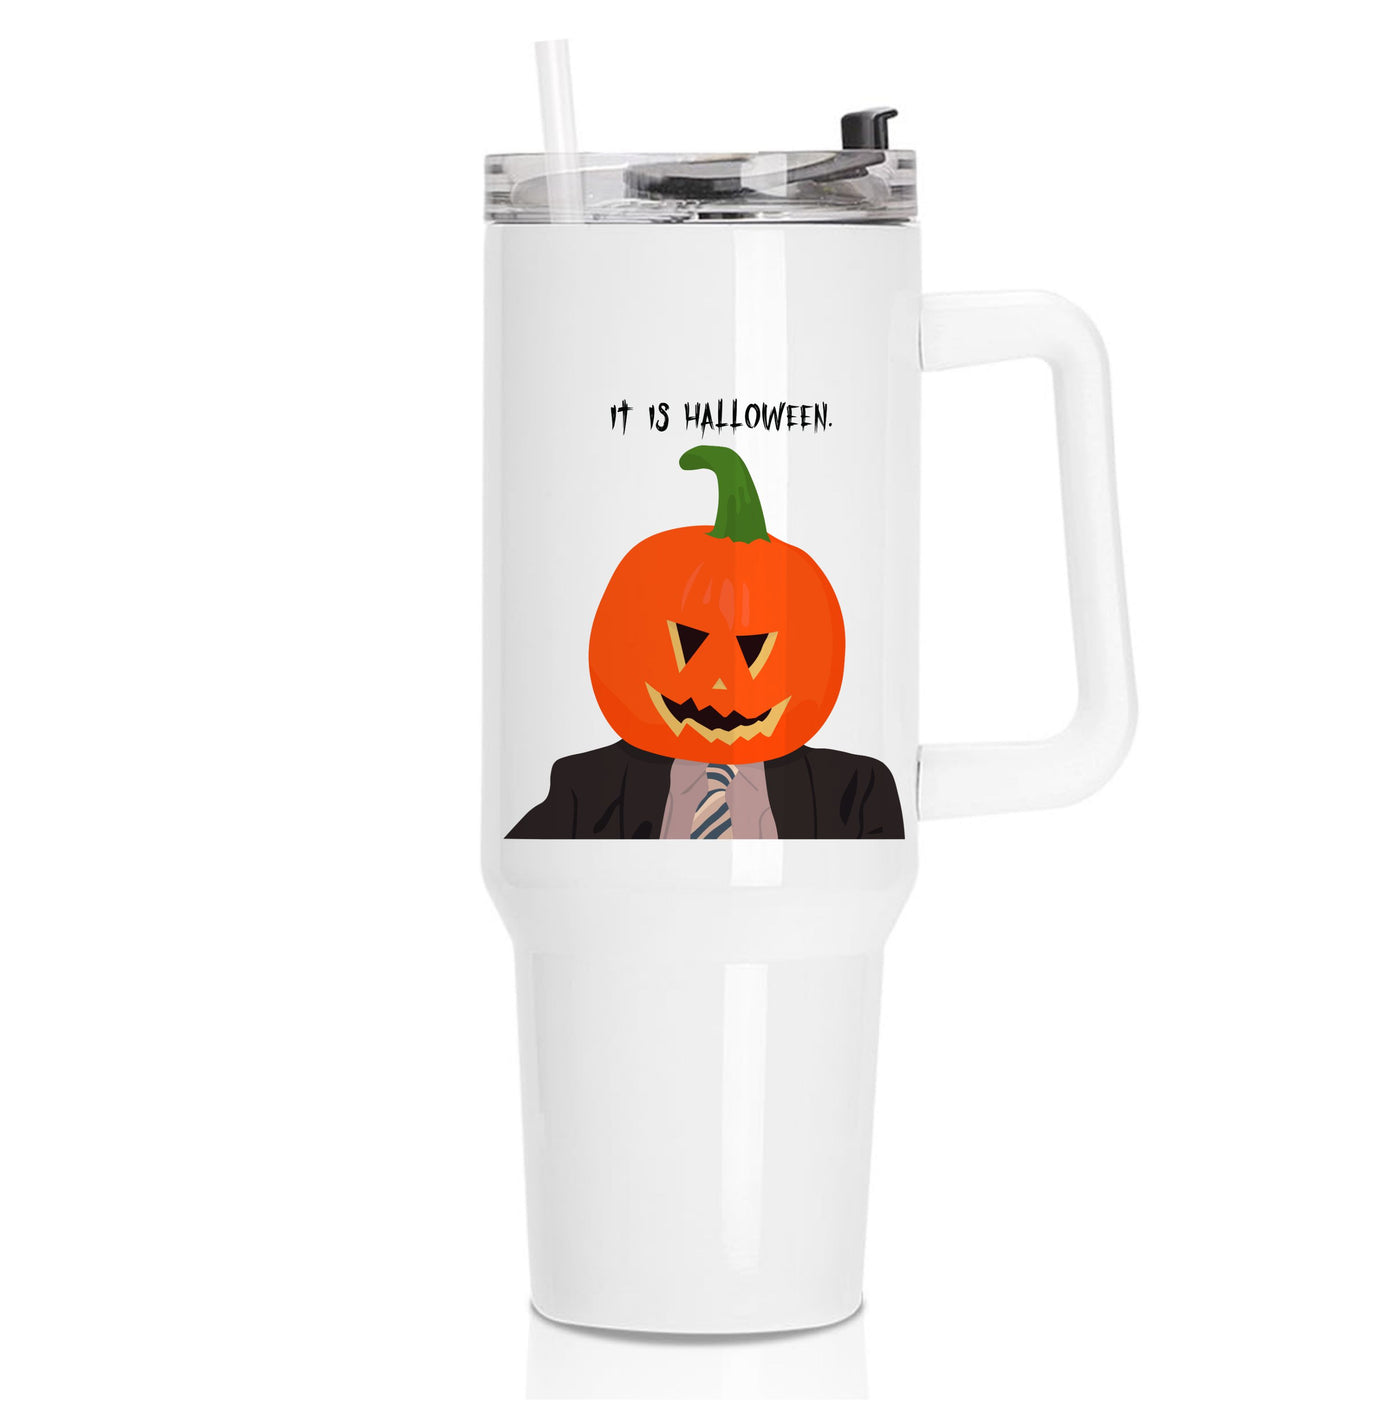 Pumpkin Dwight The Office - Halloween Specials Tumbler